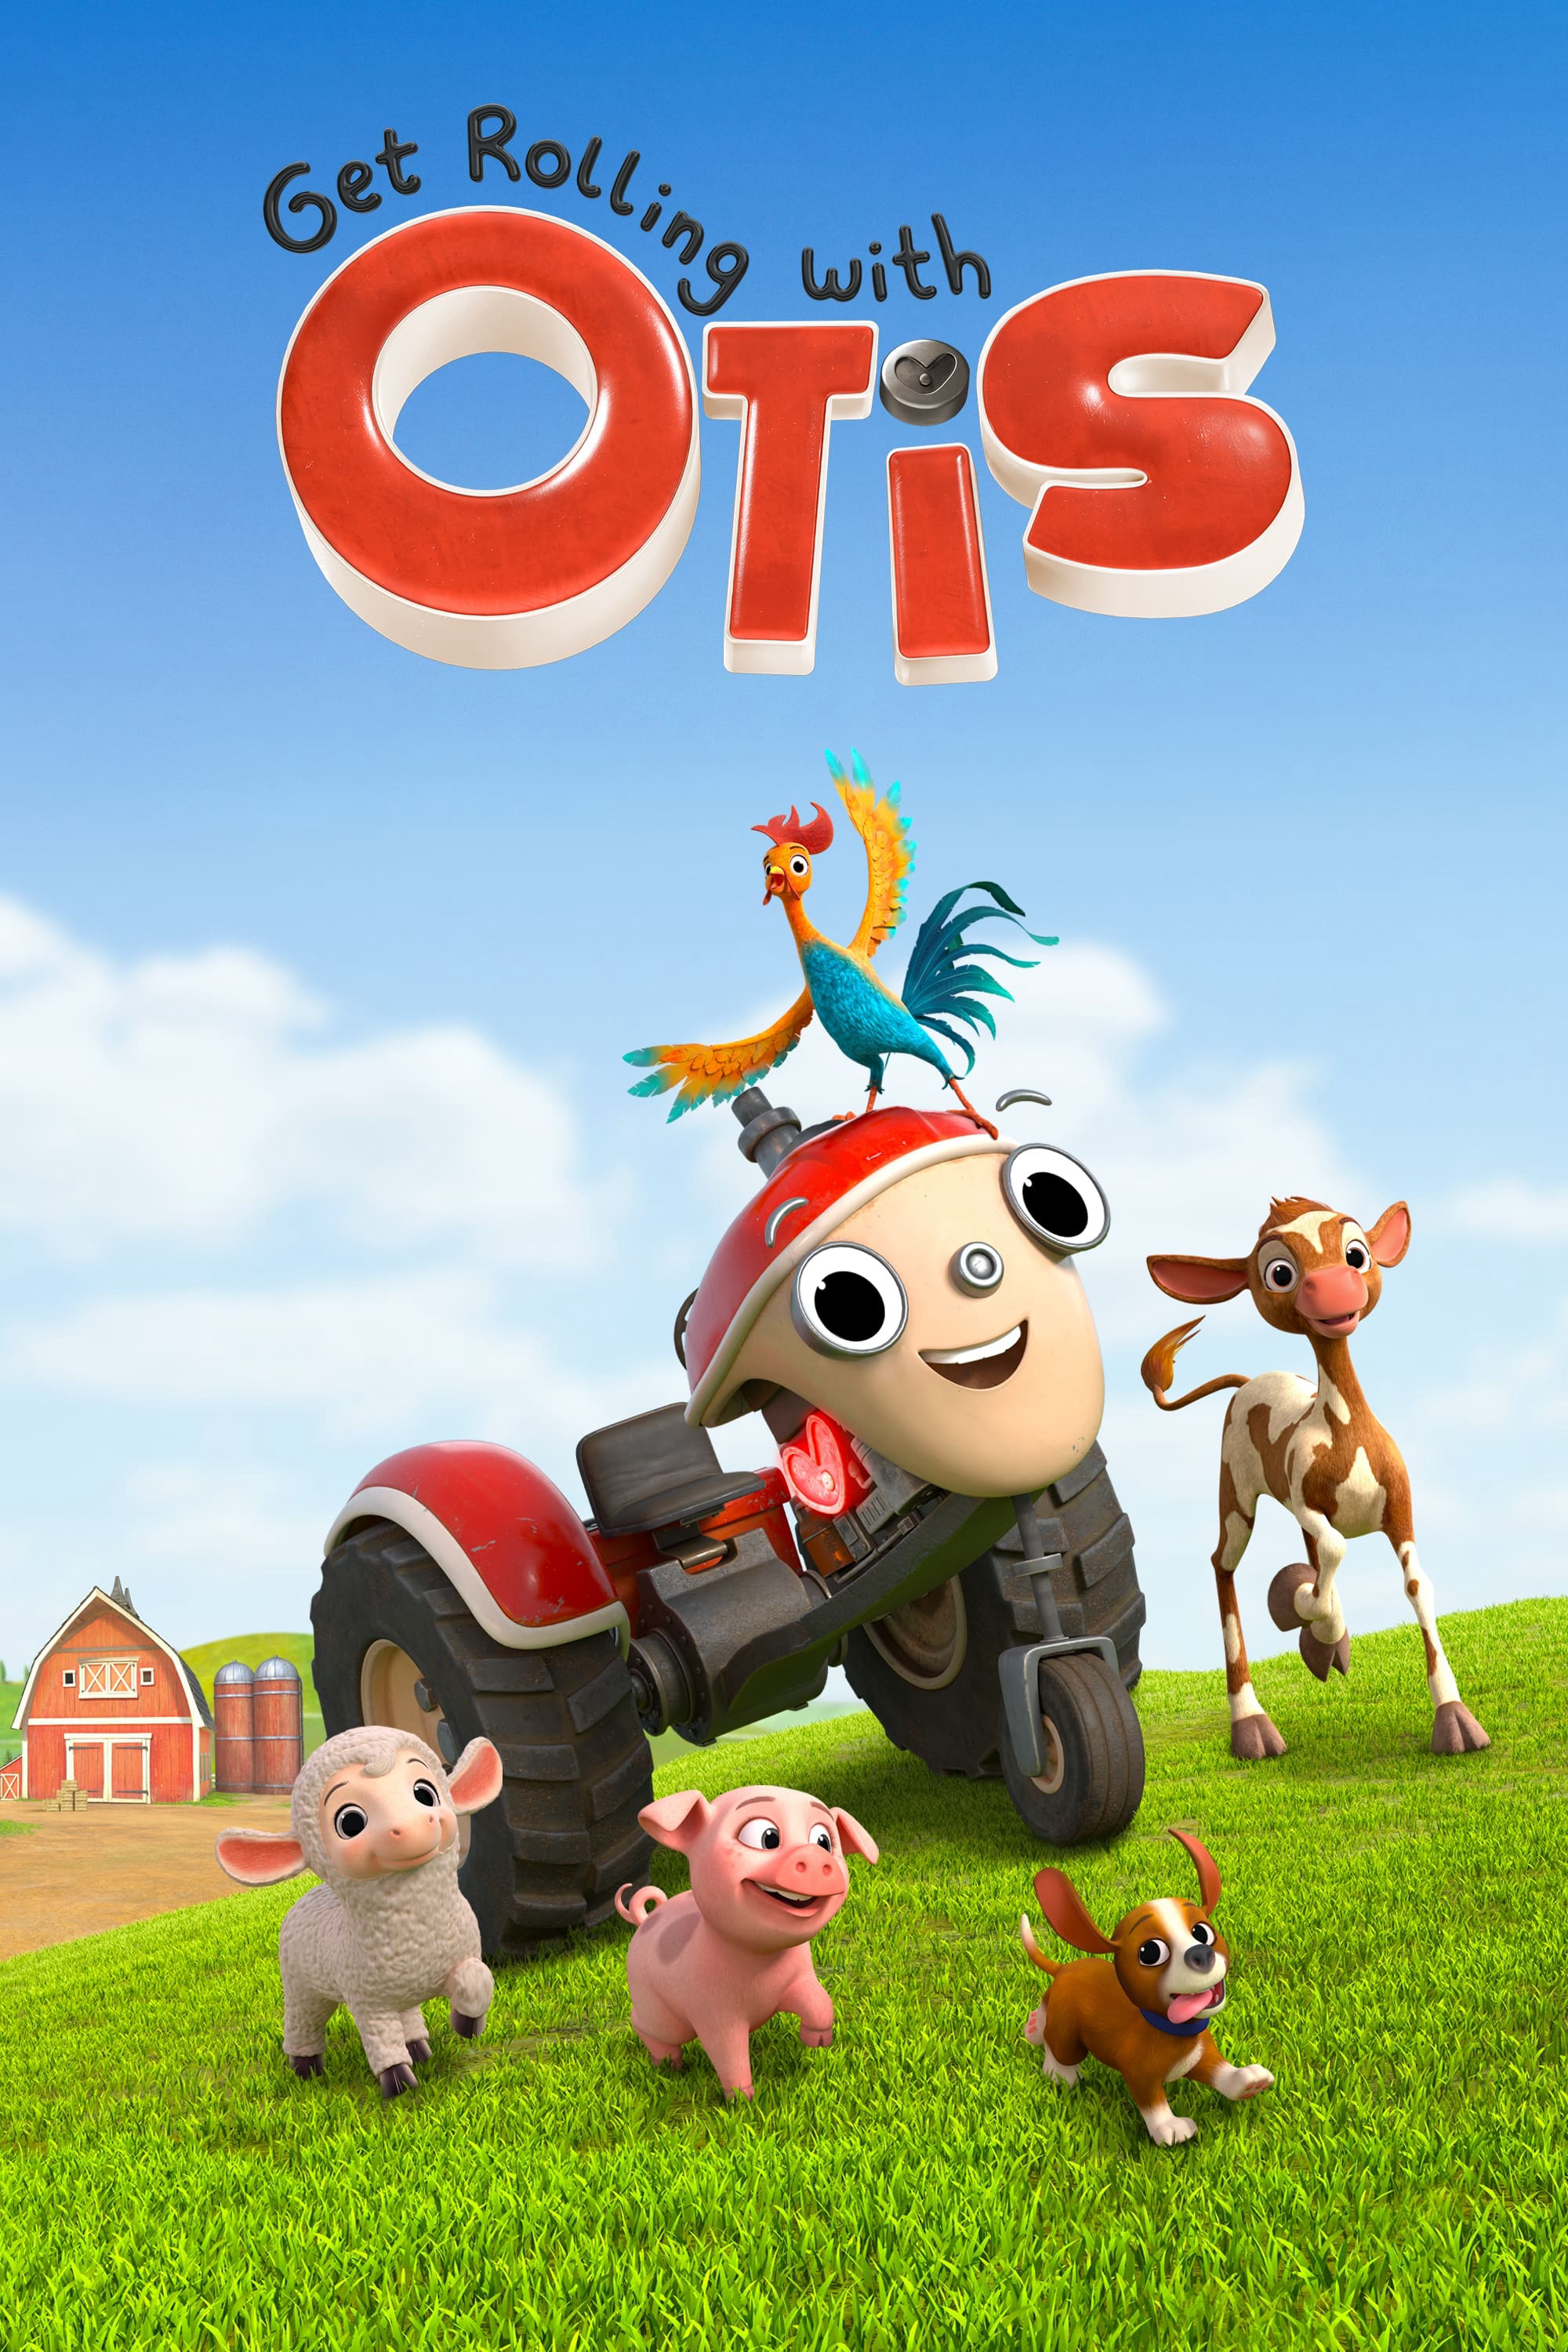 Poster Phim Lăn Bánh Cùng Otis (Phần 1) (Get Rolling with Otis (Season 1))